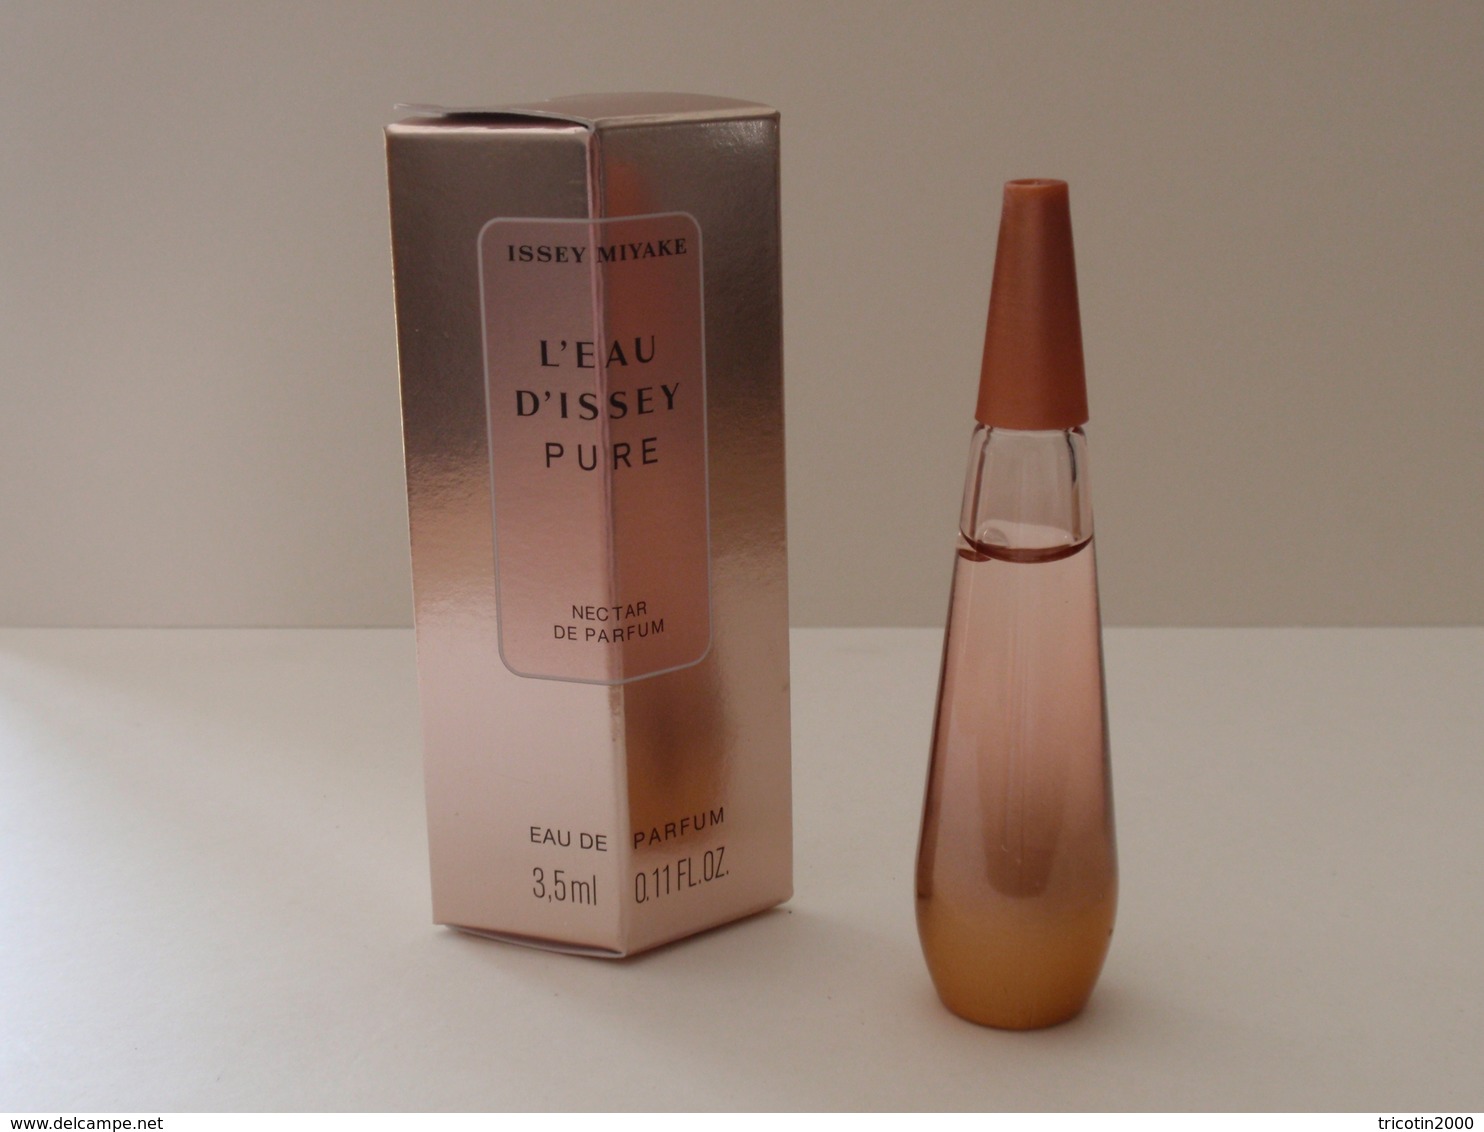 BELLE MINIATURE Eau De Parfum L'EAU D'ISSEY Pure 3,5 Ml Nectar De Parfum NOUVEAUTE 2018 - Miniatures Femmes (avec Boite)